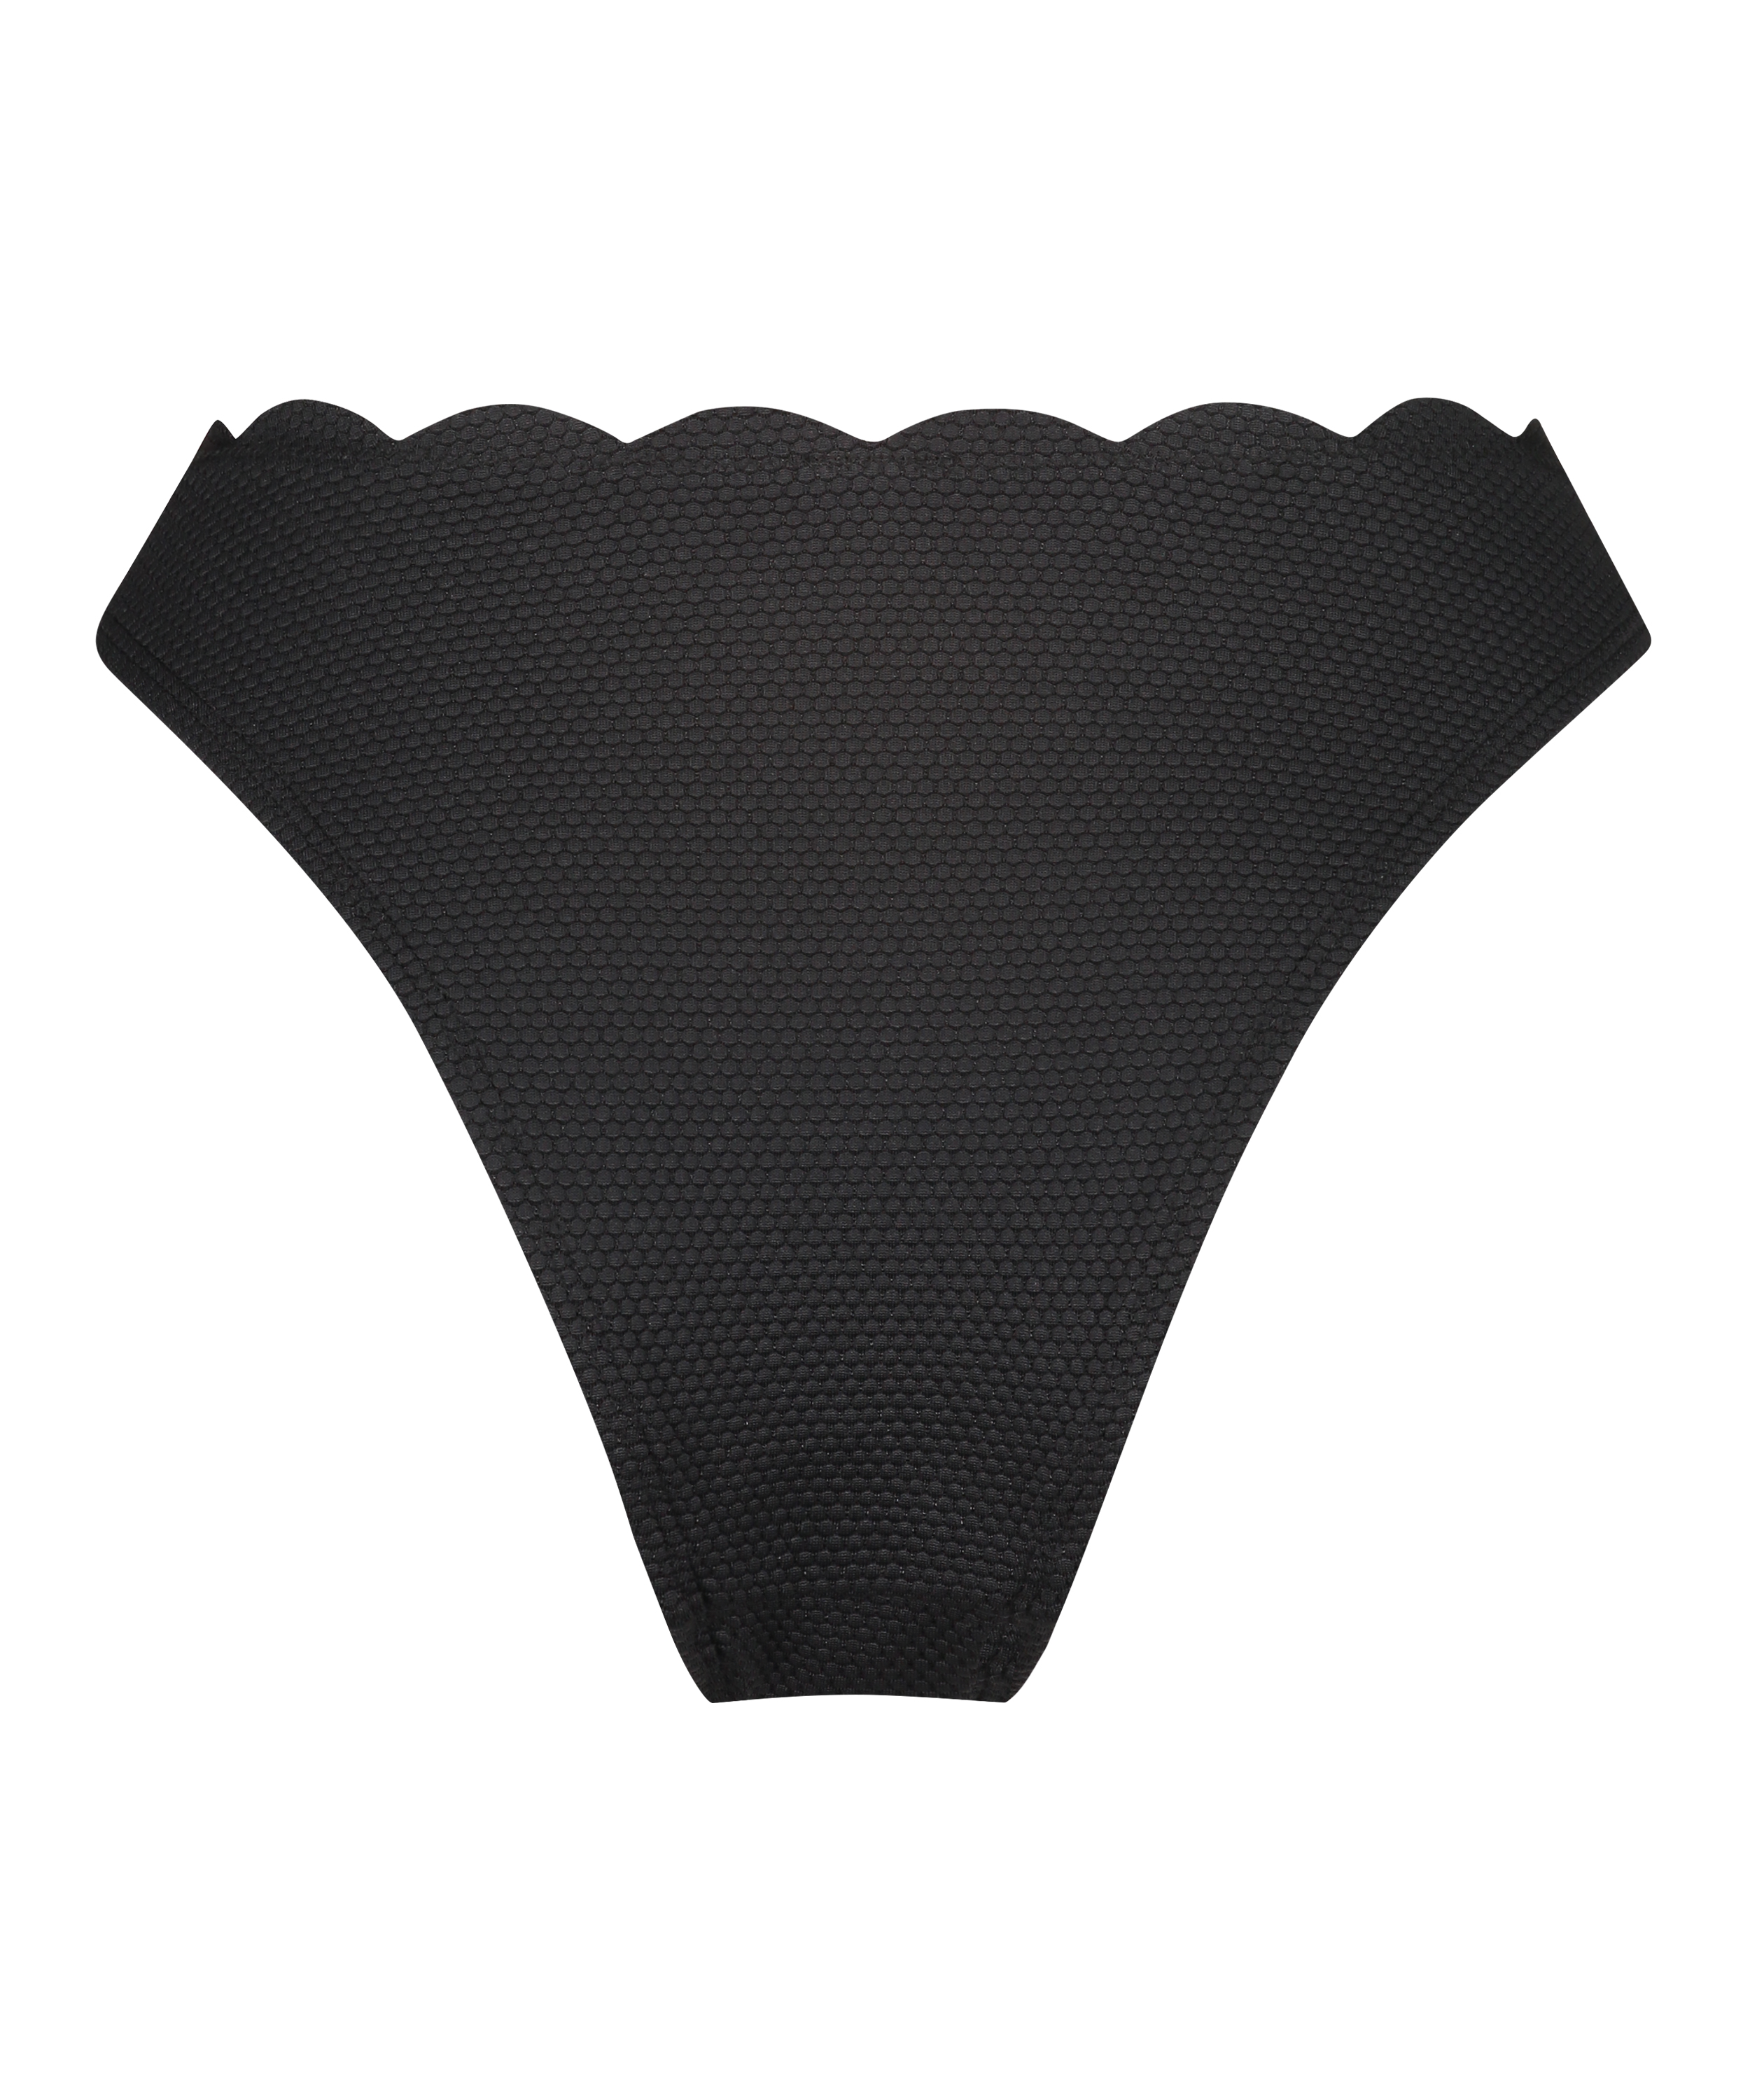 Scallop high-leg bikini bottoms, Black, main